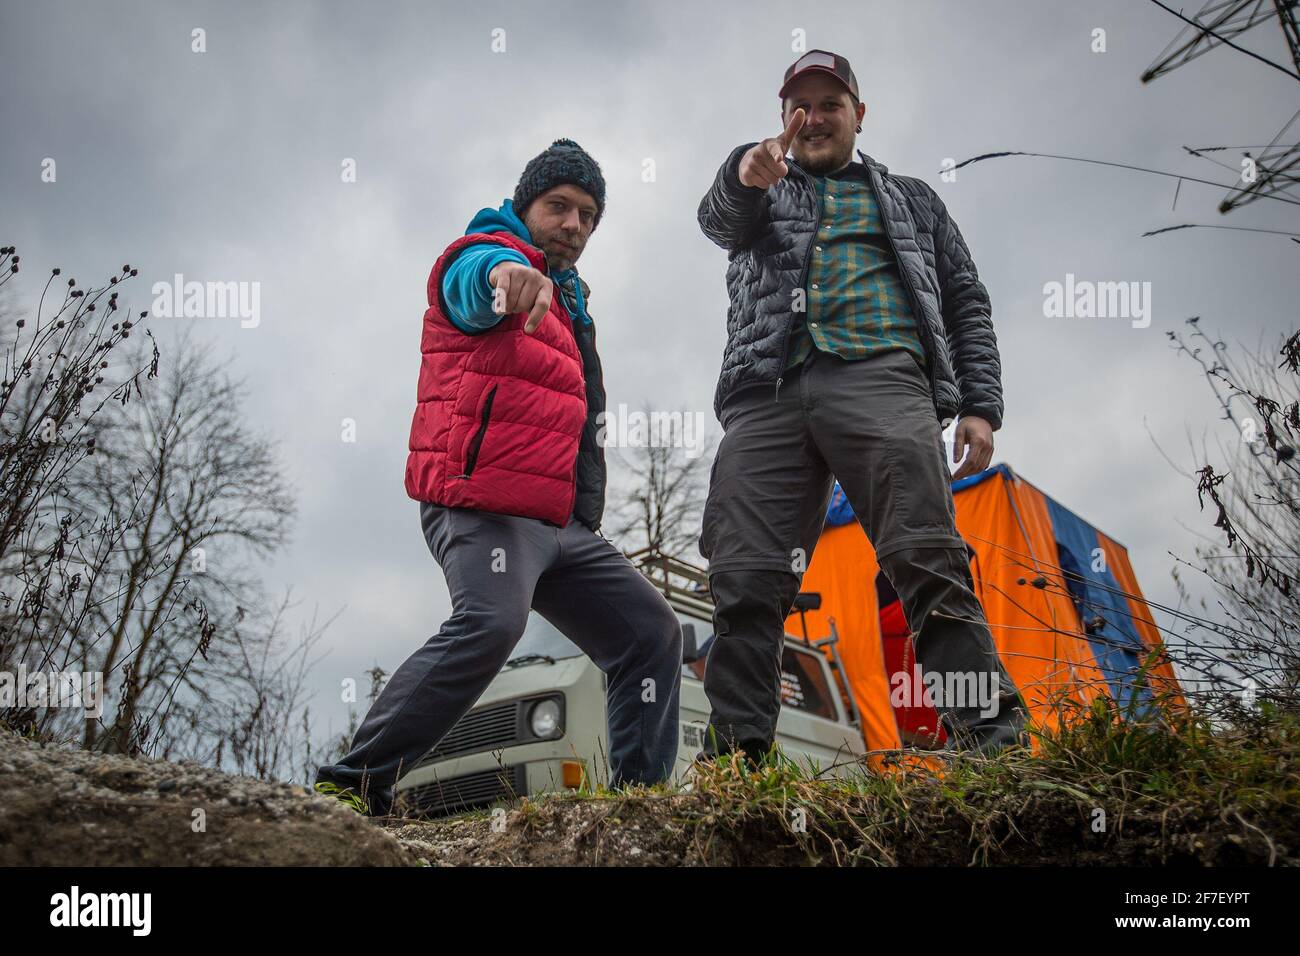 Zwei Mann in sportlicher Outdoor-Kleidung posieren in freier Wildbahn beim  Camping. Brokeback Mountain moderner Stil, ein lustiges Paar zeigt auf eine  Kamera. Wohnmobil in t Stockfotografie - Alamy